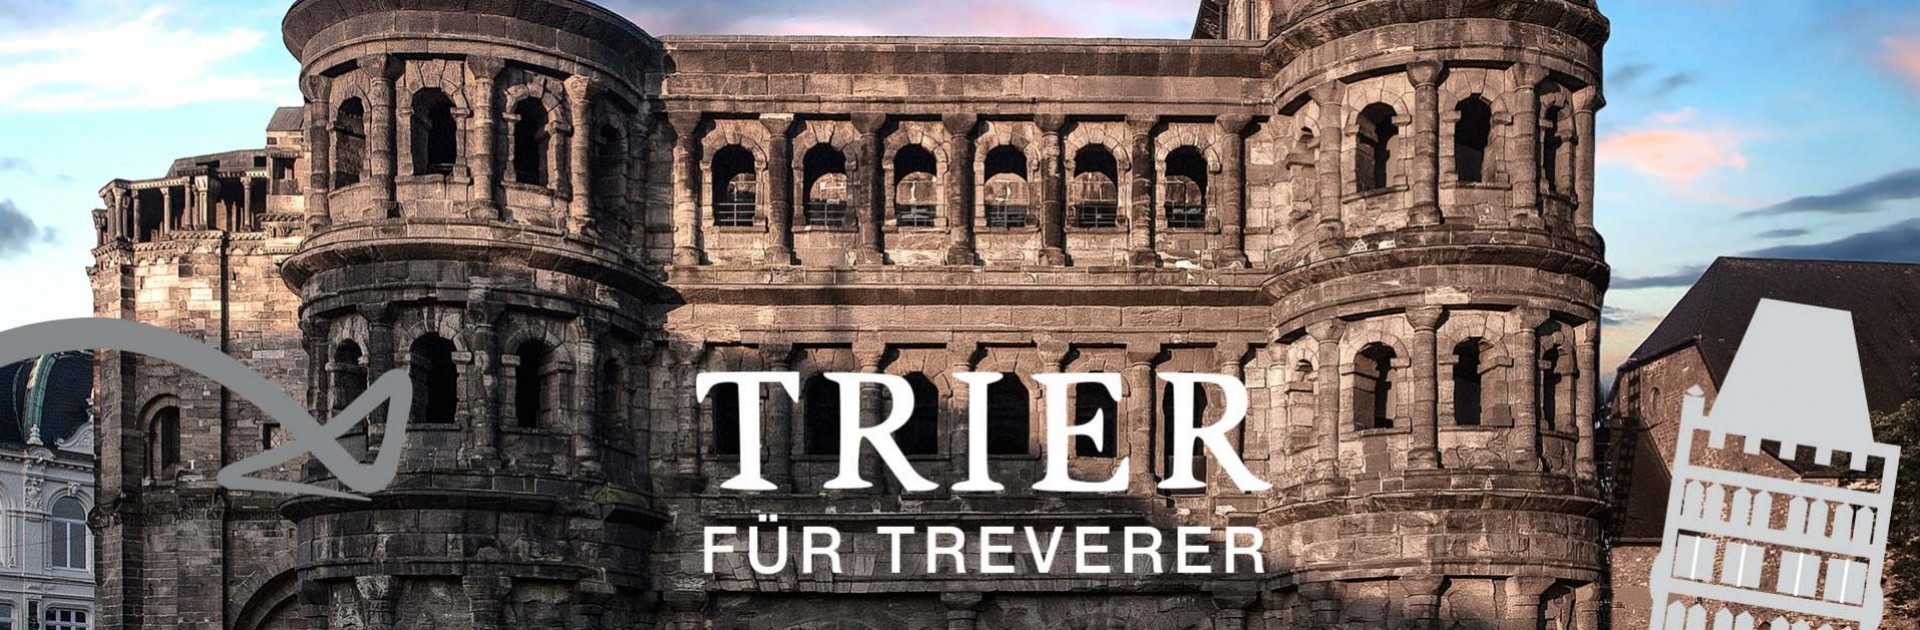 Porta mit Trier für Treverer Schriftzug - © Trier Tourismus und Marketing GmbH